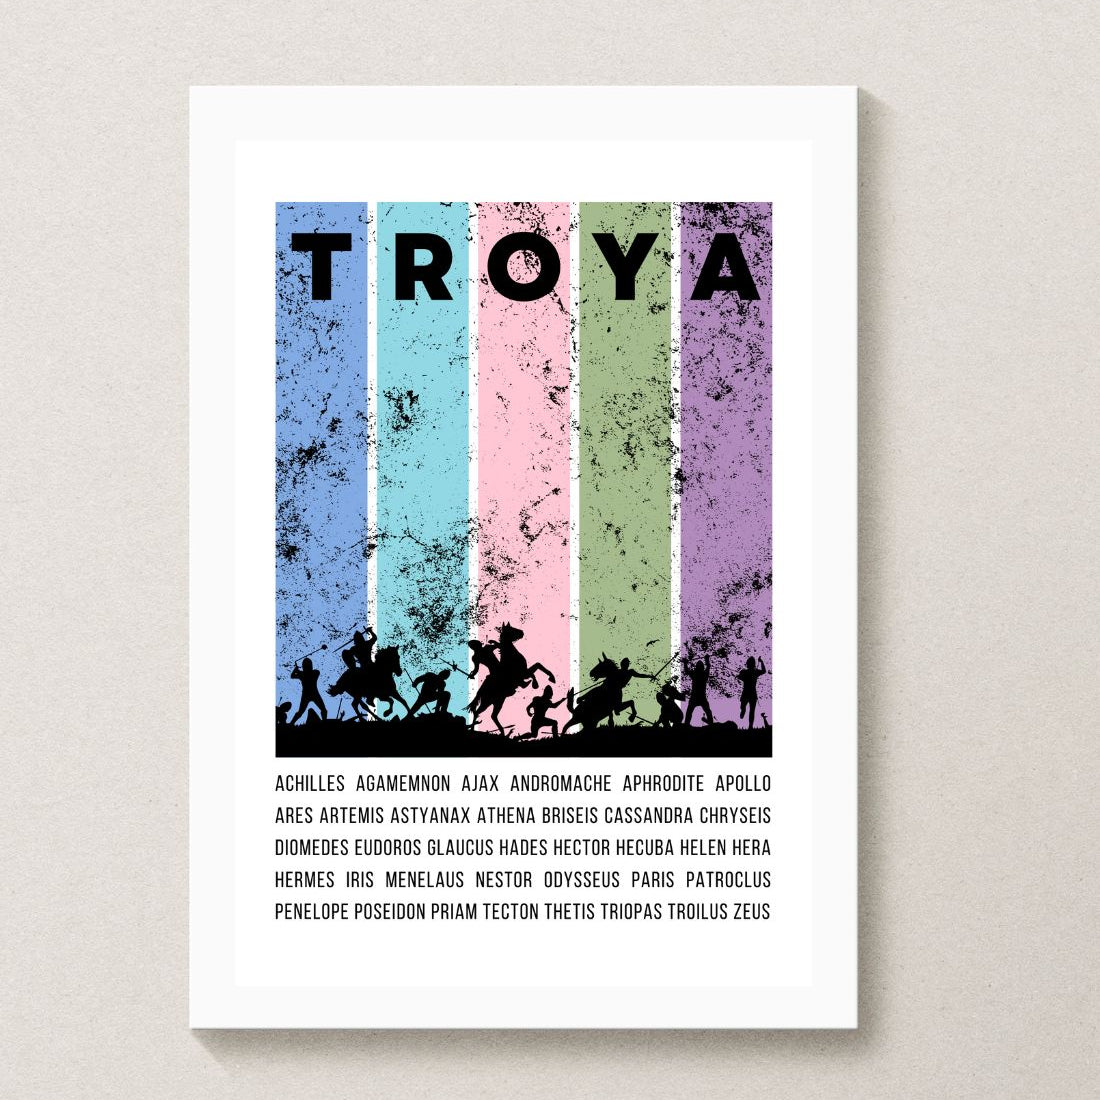 troy troya trojan posters